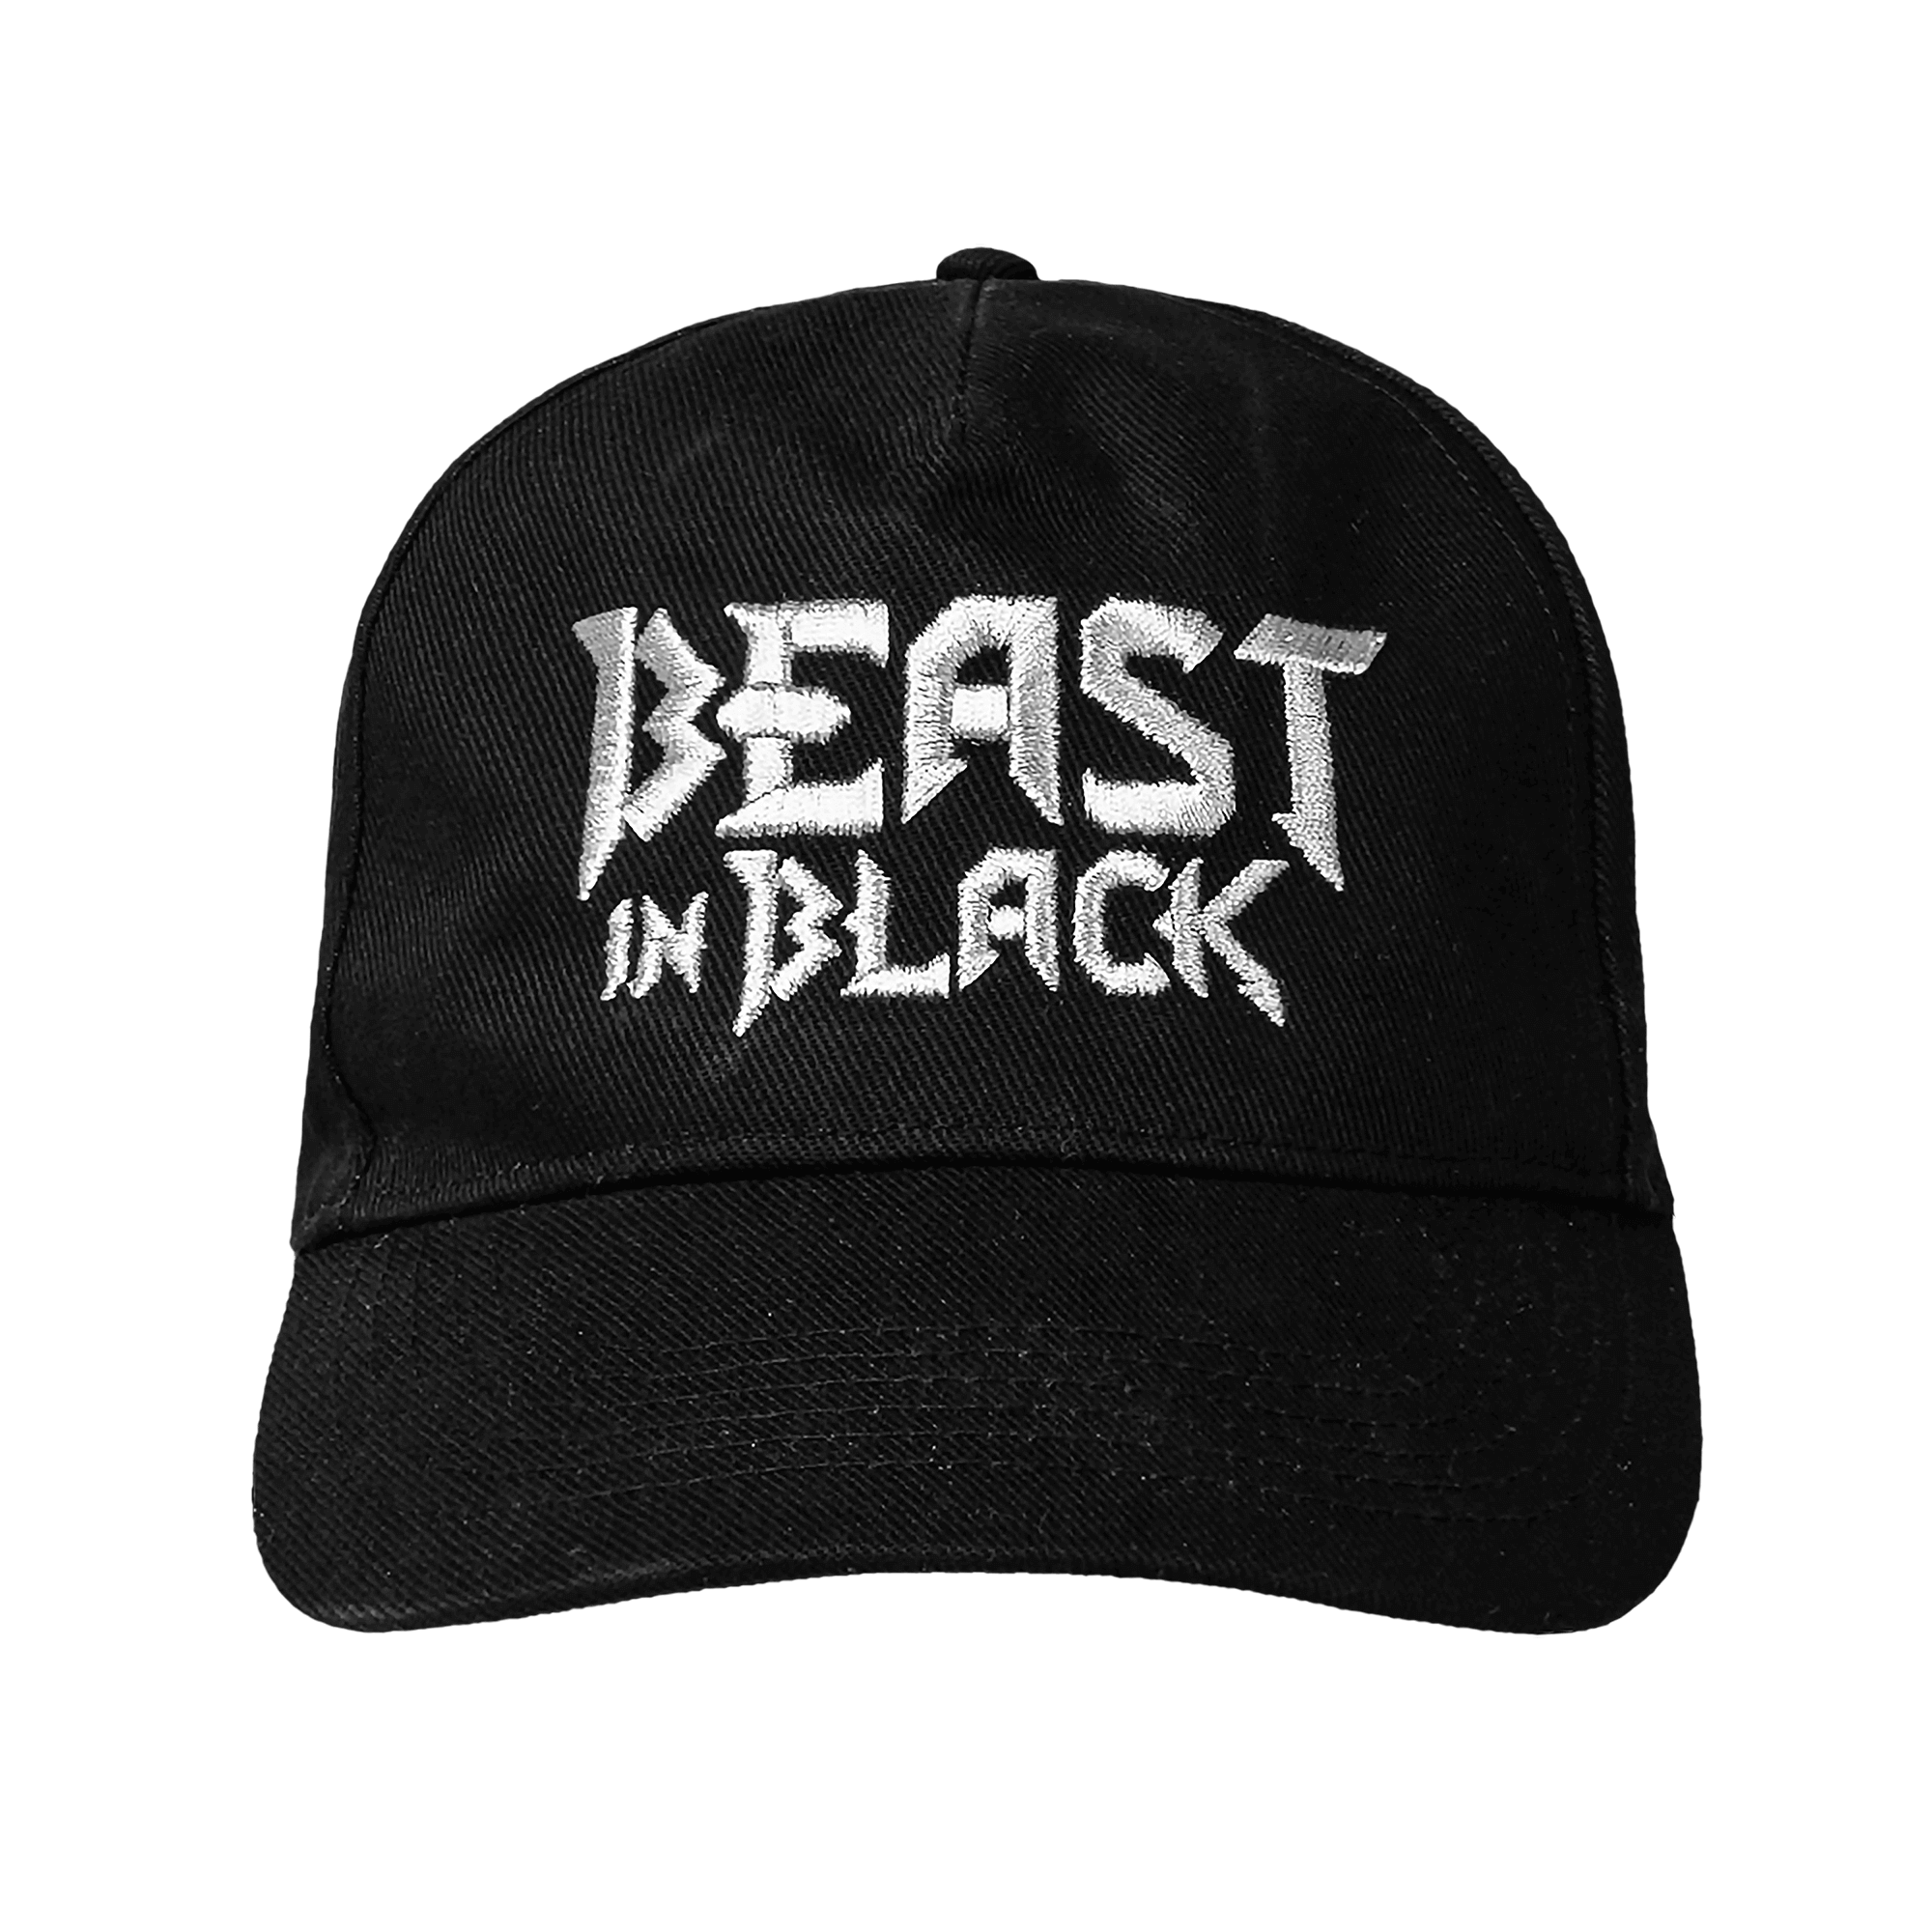 https://images.bravado.de/prod/product-assets/product-asset-data/beast-in-black/beast-in-black/products/133135/web/420861/image-thumb__420861__3000x3000_original/Beast-In-Black-Silver-Logo-Basecap-schwarz-133135-420861.png